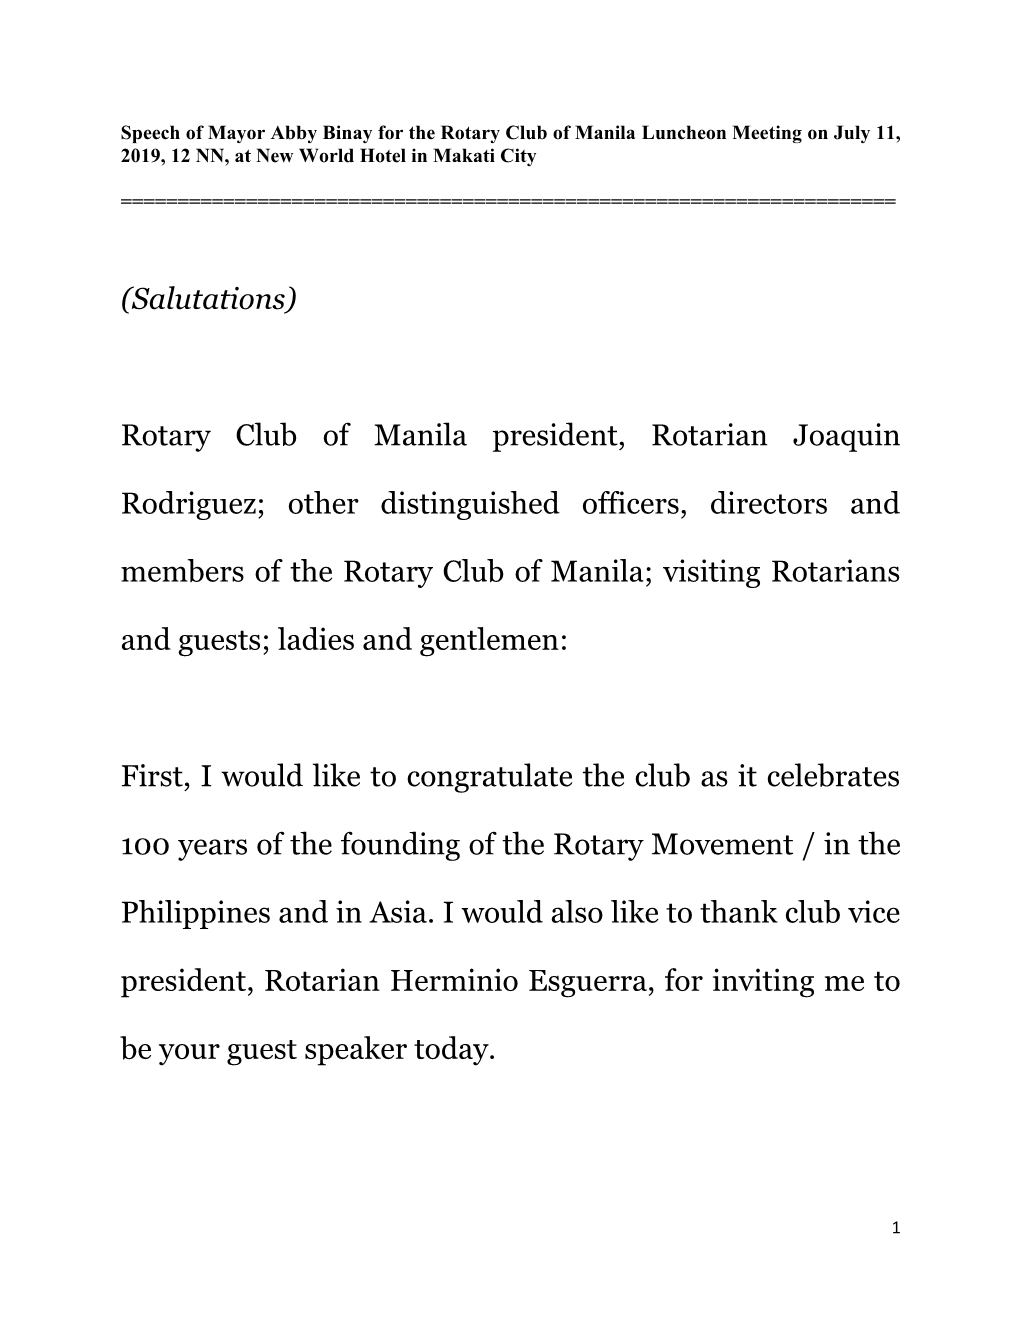 Rotary Club of Manila President, Rotarian Joaquin Rodriguez